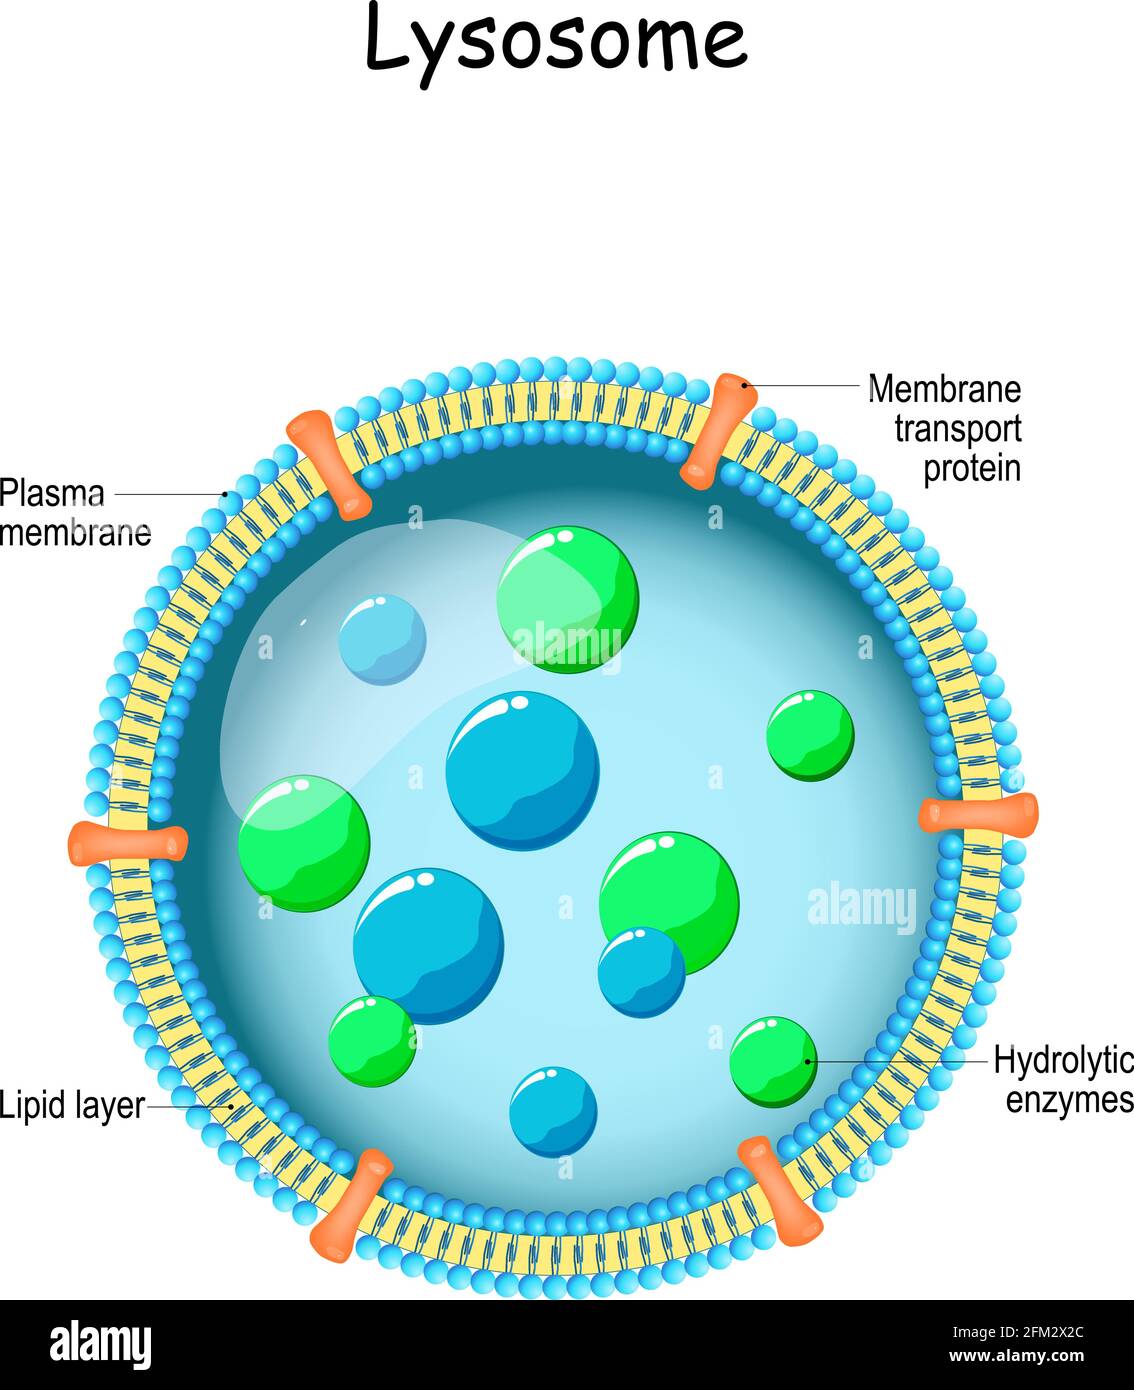 Lysososososososum. Anatomie des Lysosomes: Hydrolytische Enzyme, Membran- und Transportproteine. Organelle verwenden die Enzyme, um Nahrung zu zersetzen und zu verdauen Stock Vektor